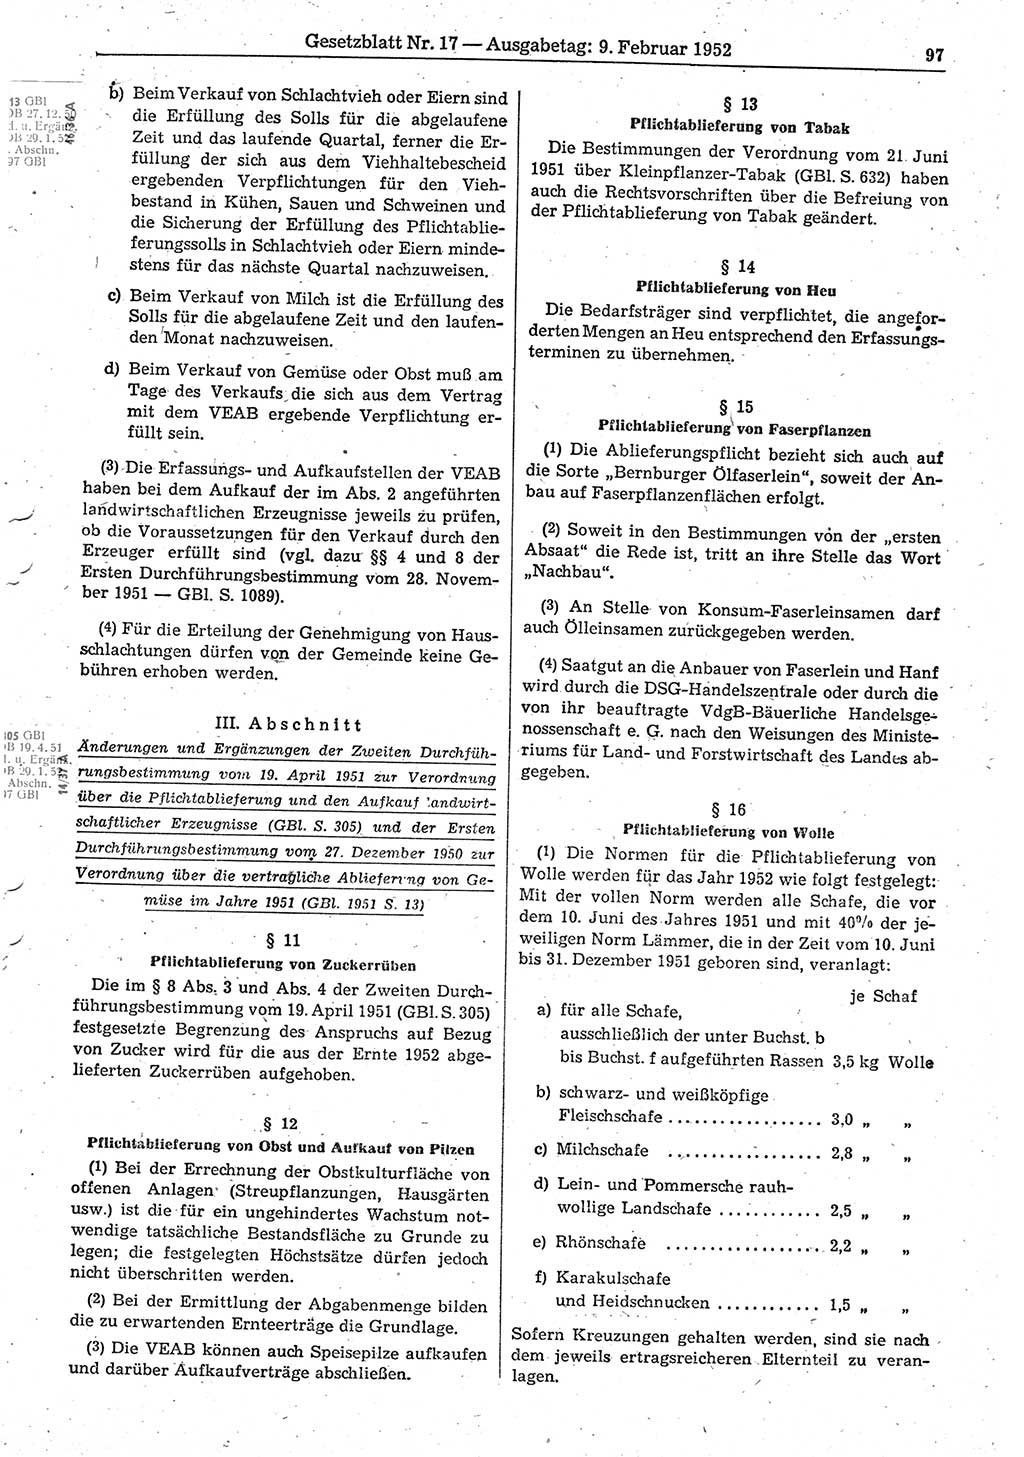 Gesetzblatt (GBl.) der Deutschen Demokratischen Republik (DDR) 1952, Seite 97 (GBl. DDR 1952, S. 97)